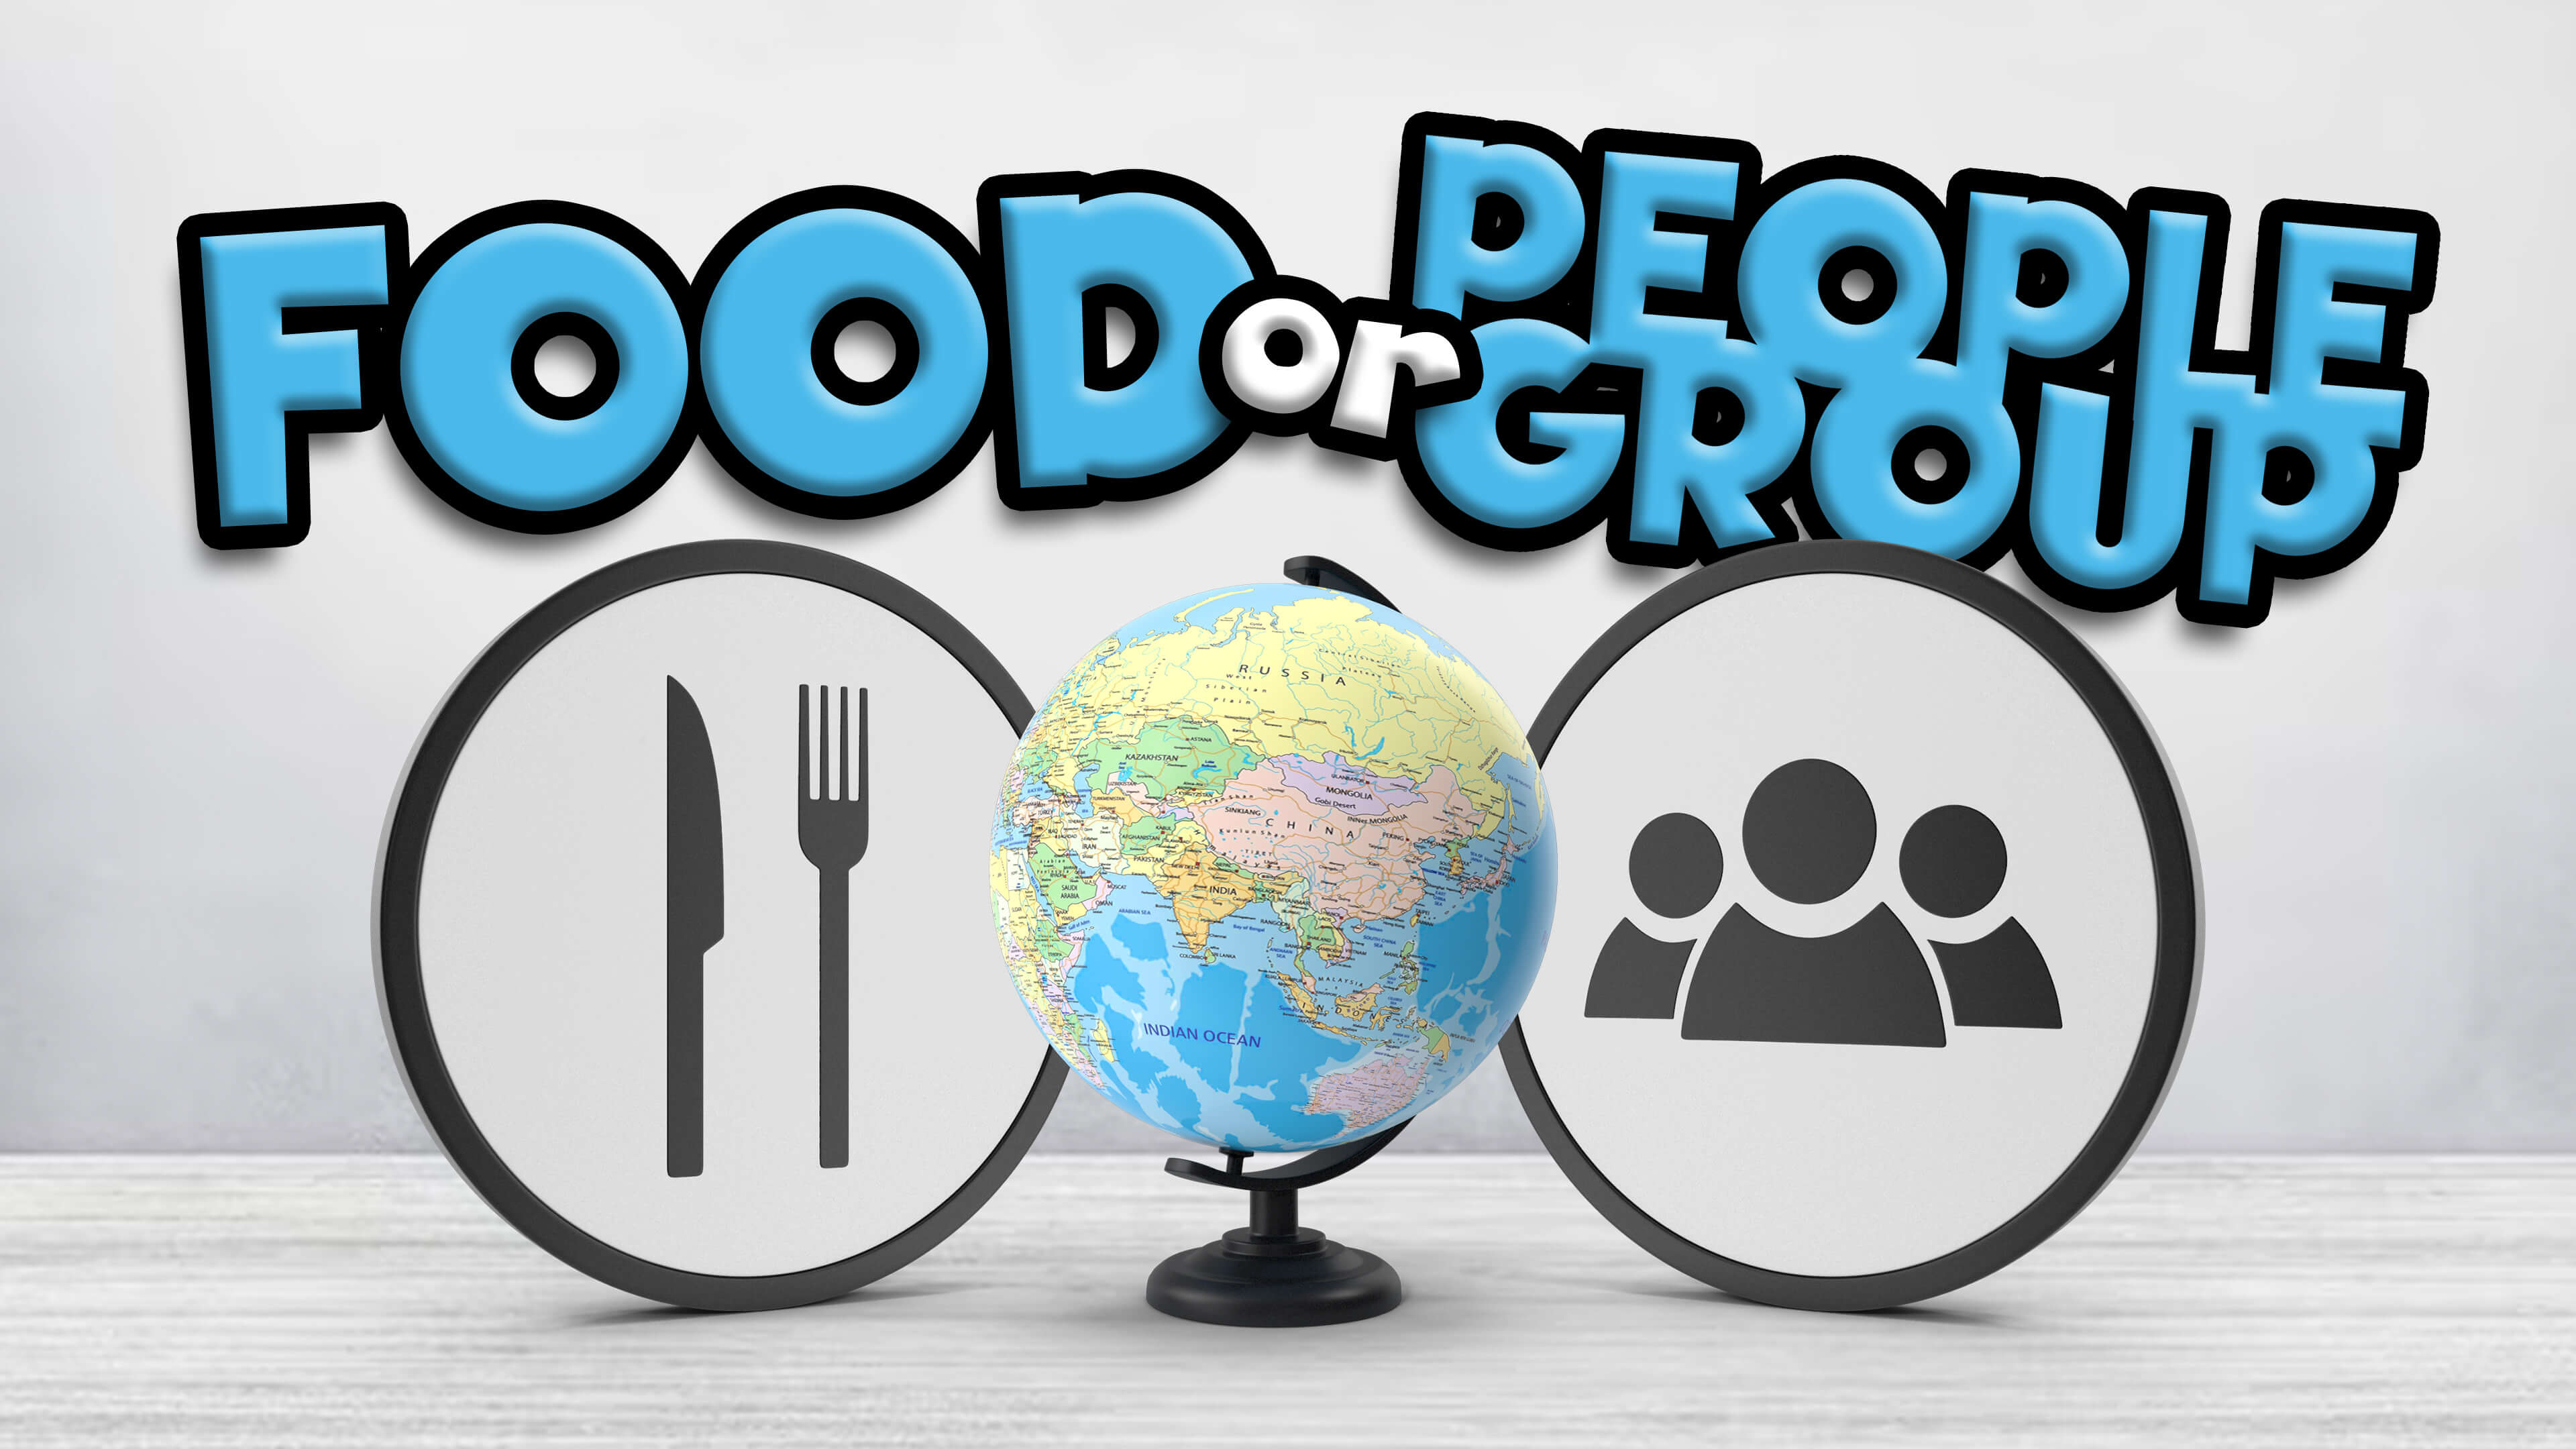 Food or People Group